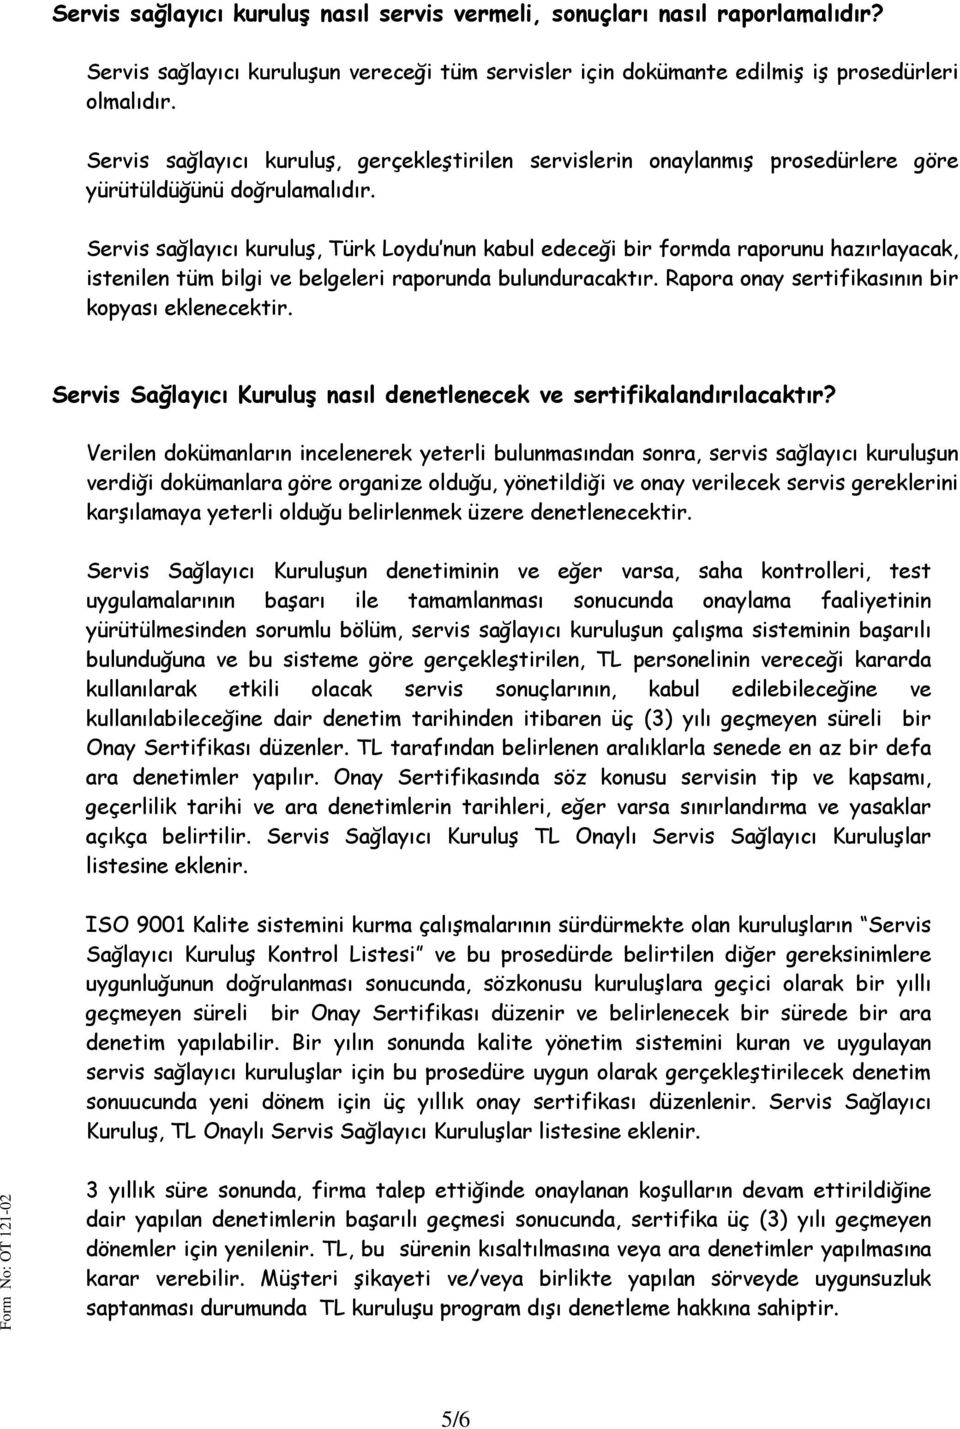 Servis sağlayıcı kuruluş, Türk Loydu nun kabul edeceği bir formda raporunu hazırlayacak, istenilen tüm bilgi ve belgeleri raporunda bulunduracaktır.